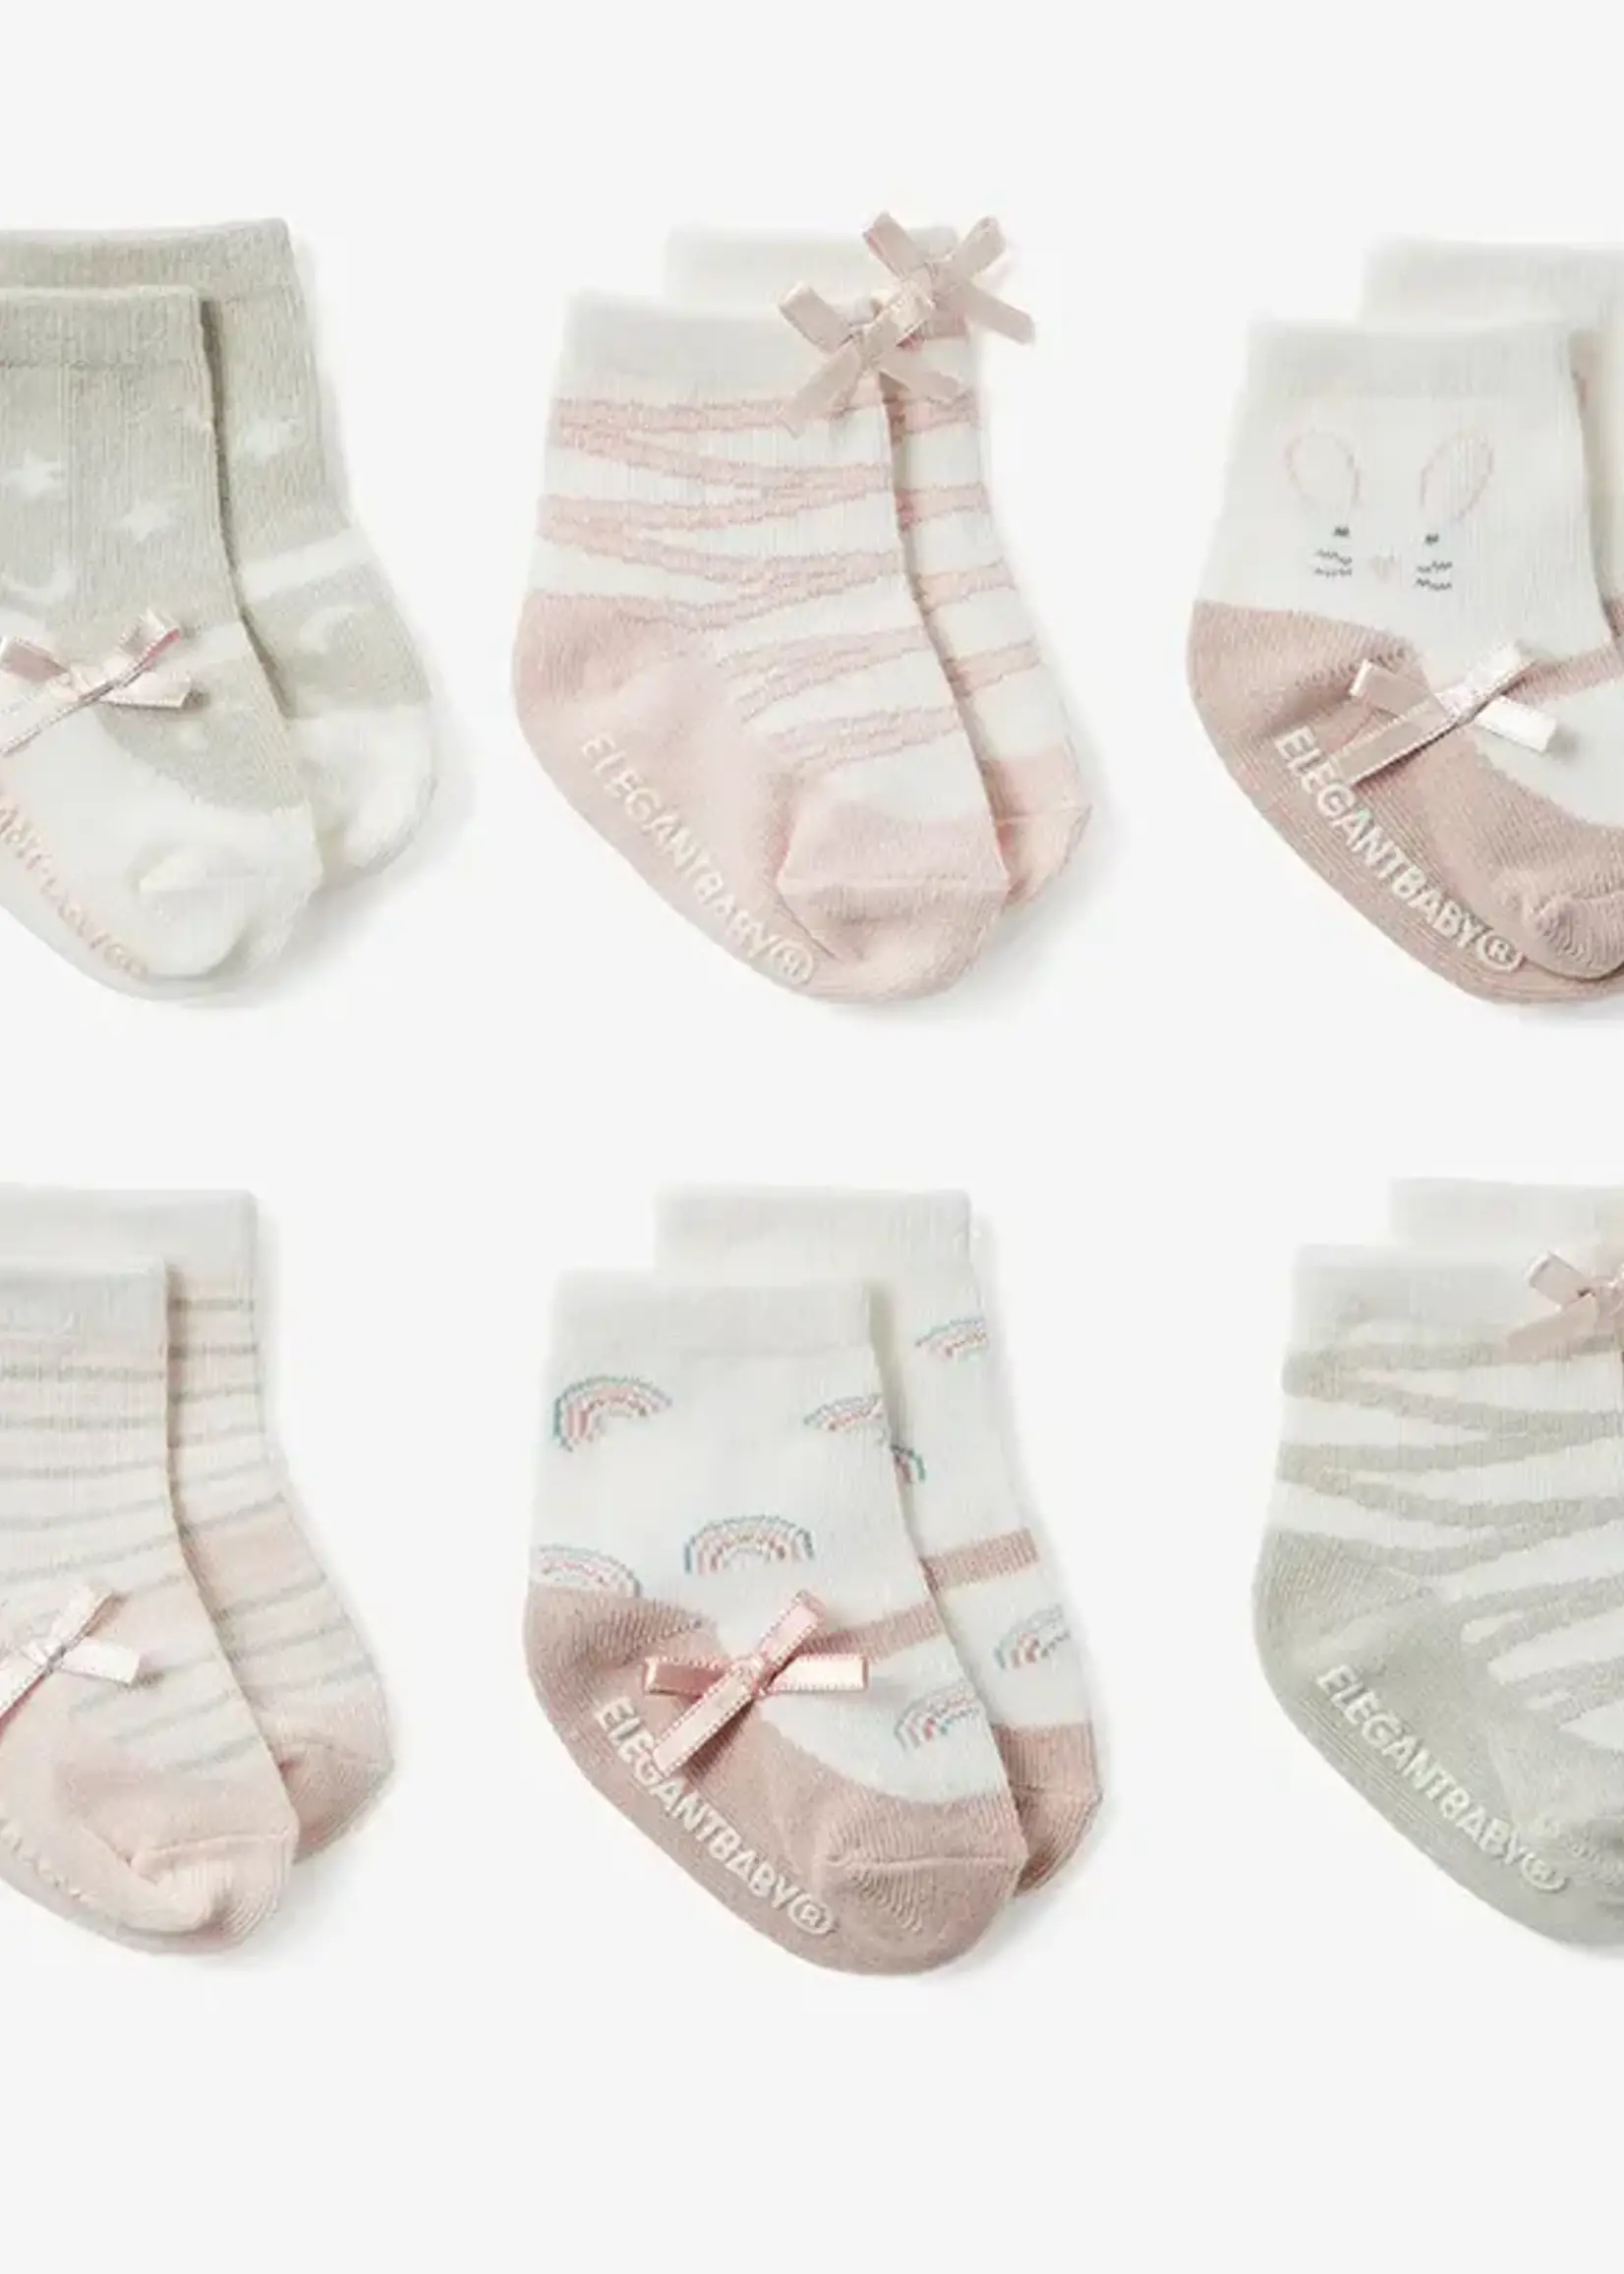 Elegant Baby Socks-6pk-Maryjane Pink 78239